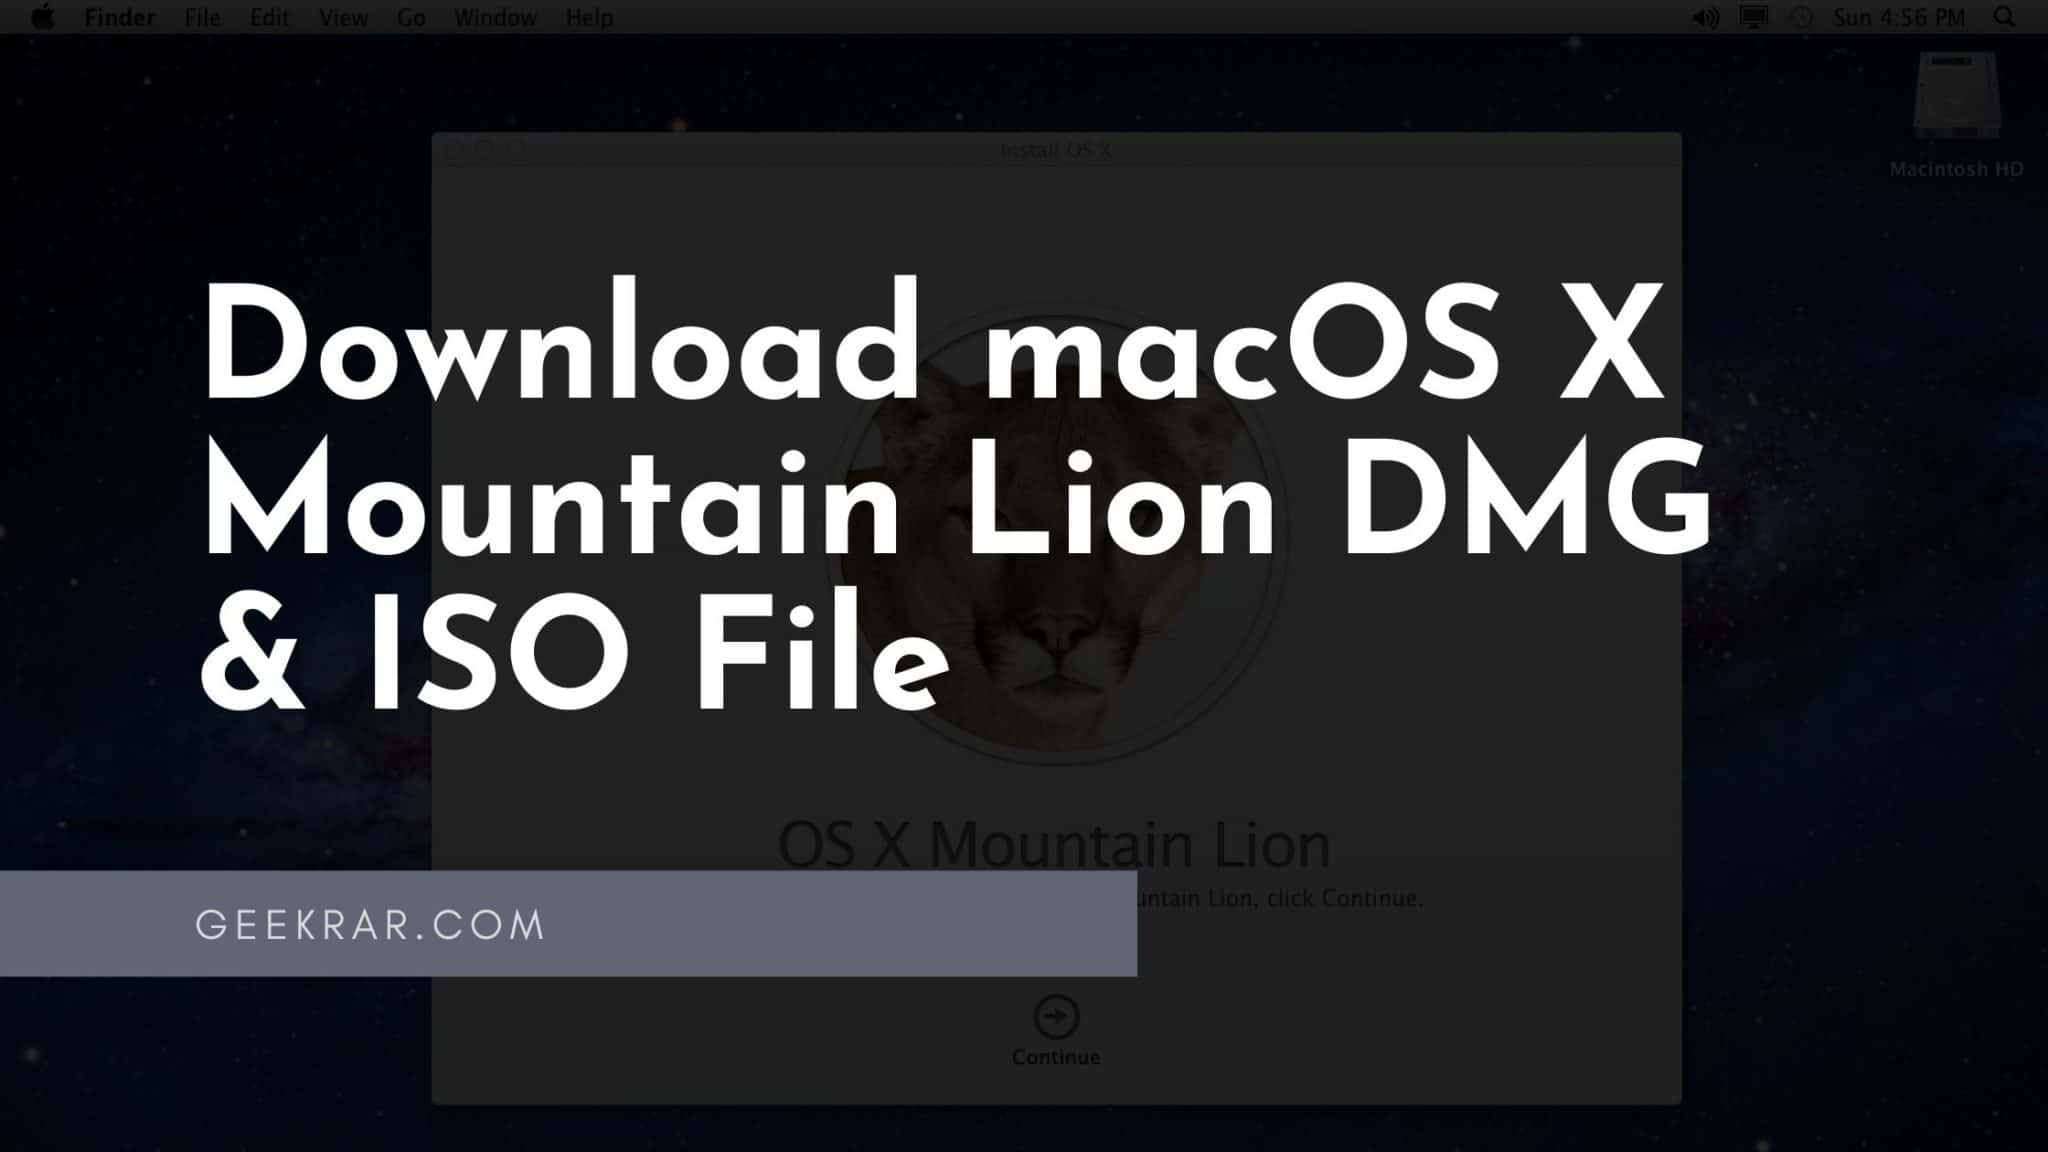 macos mountain lion dmg